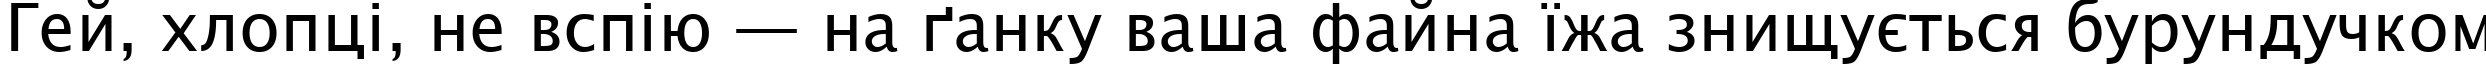 Пример написания шрифтом Lucida Sans Unicode текста на украинском